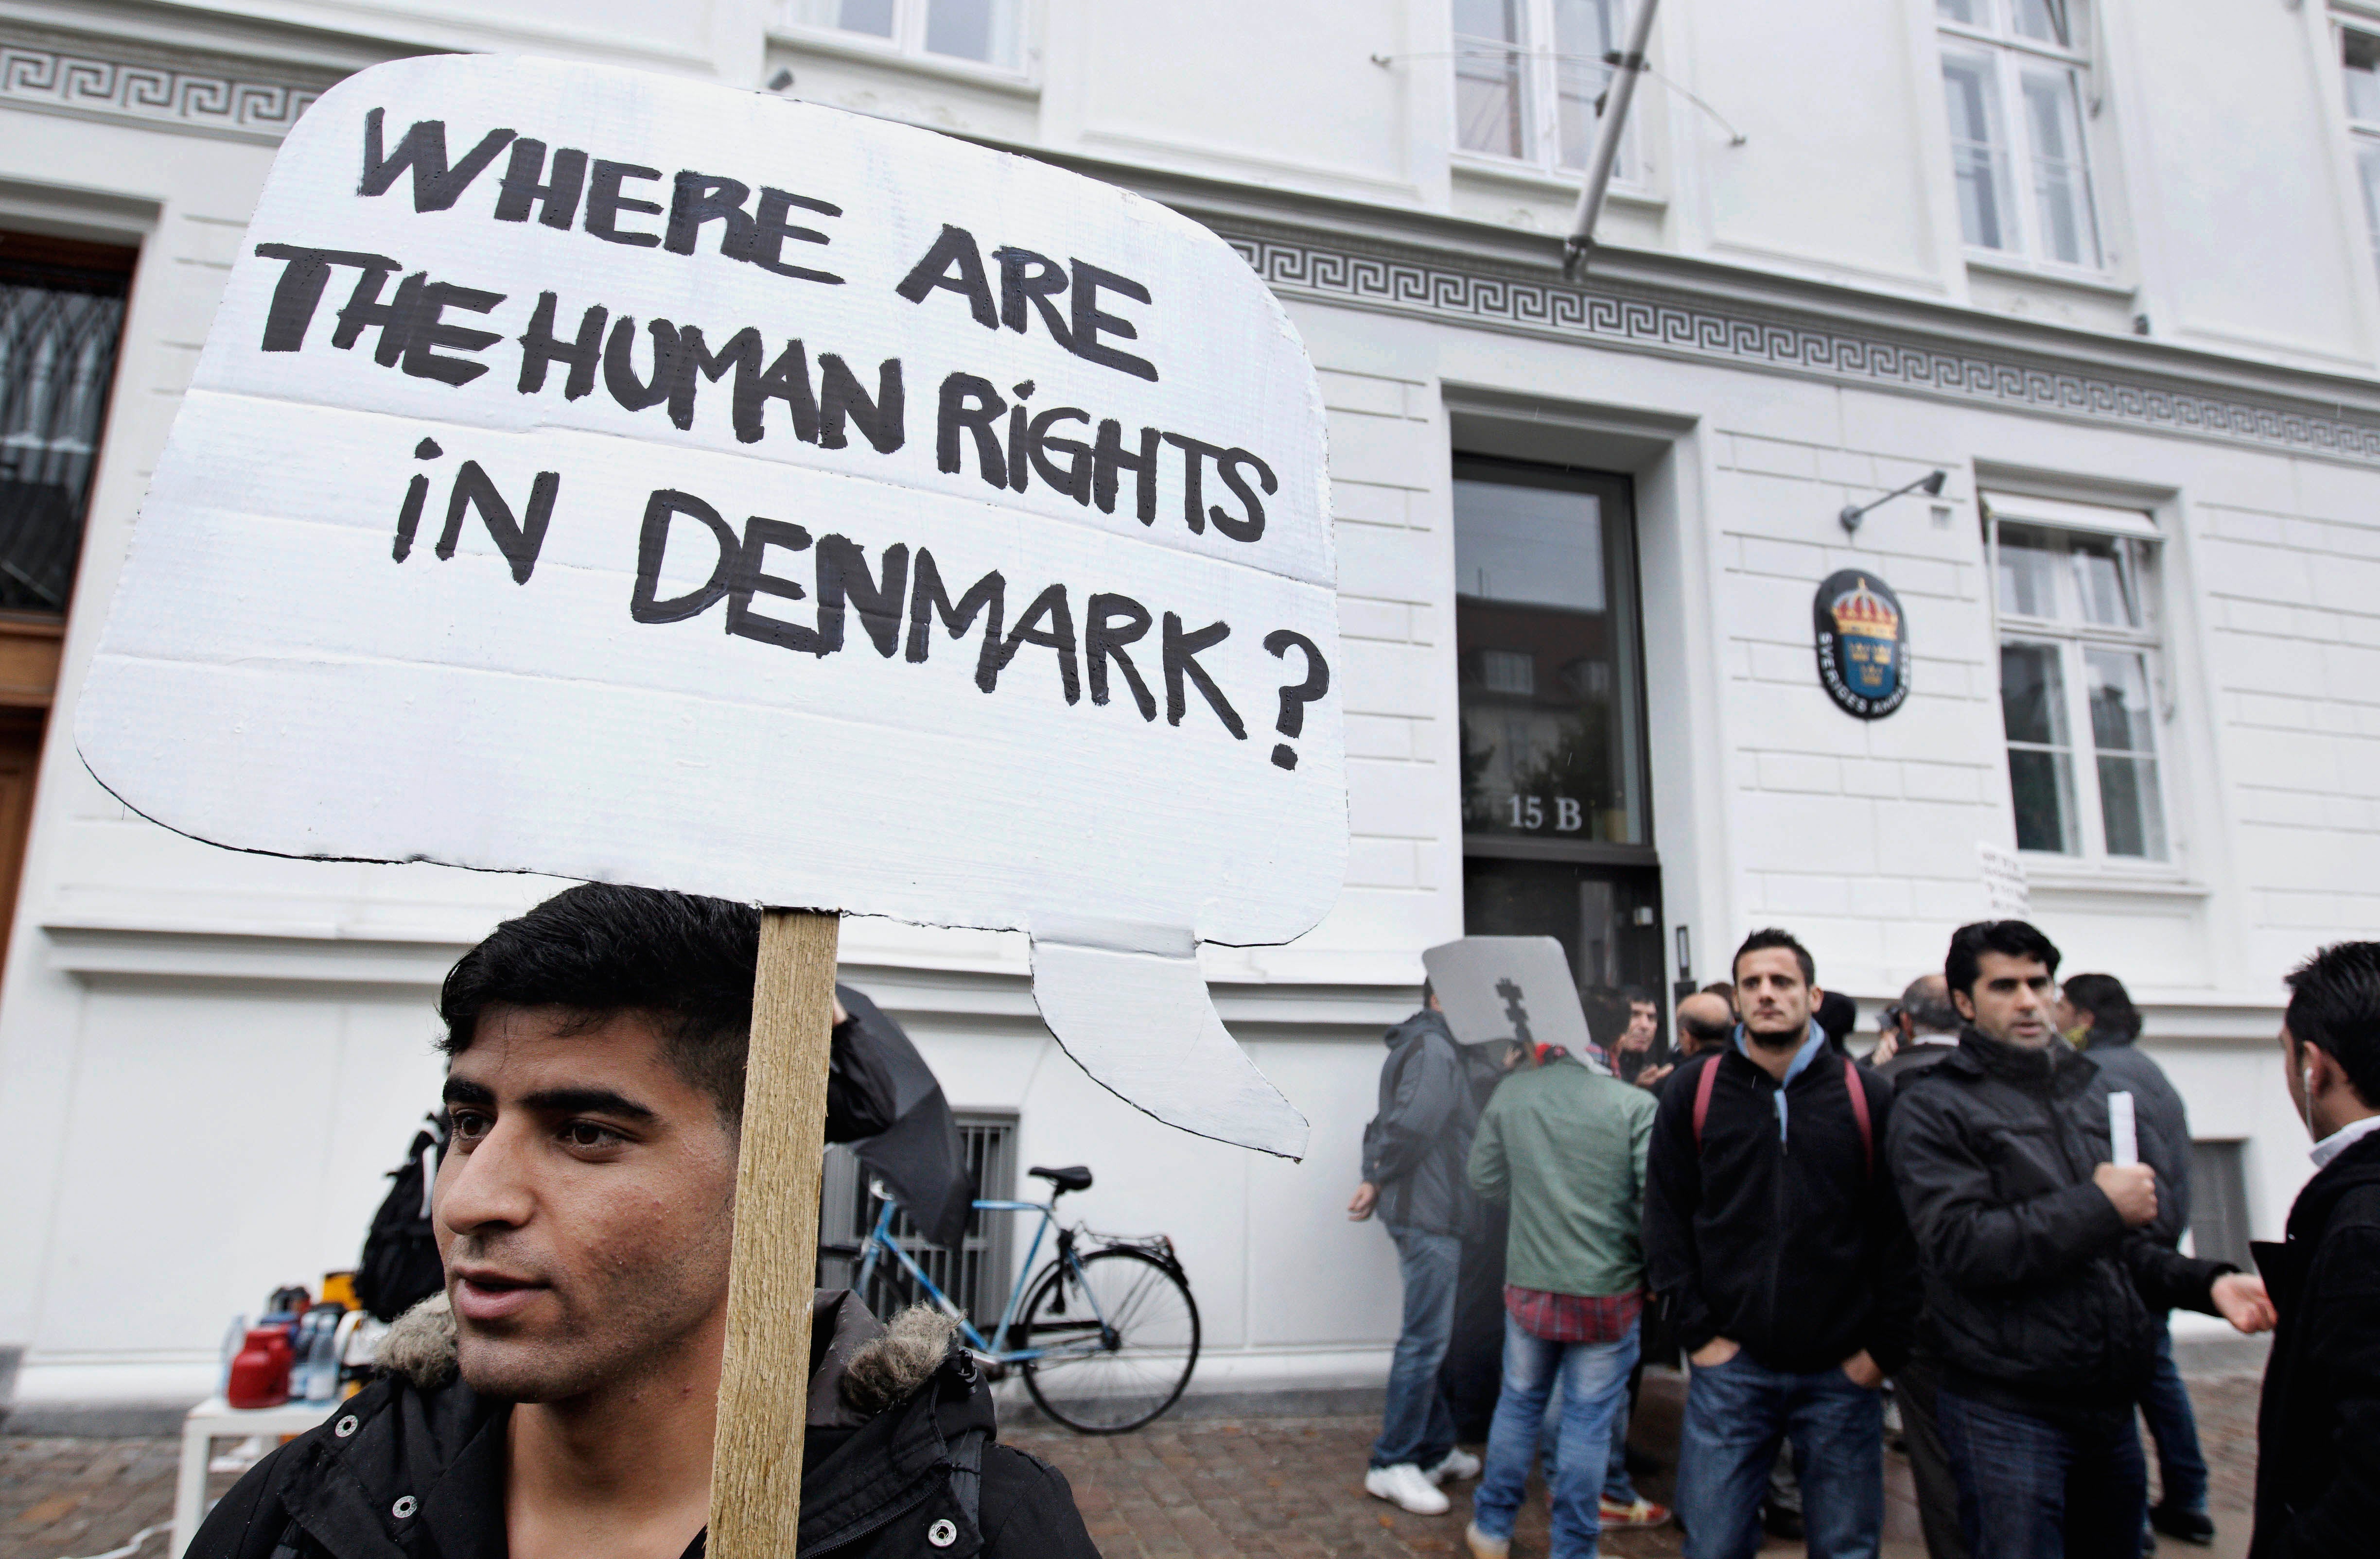 لاجئون سوريون يحملون لافتات أمام السفارة السويدية في كوبنهاغن، الدنمارك، احتجاجا على سياسات اللجوء الدنماركية تجاه الفارين من الحرب الأهلية السورية، في 26 سبتمبر/أيلول 2012.